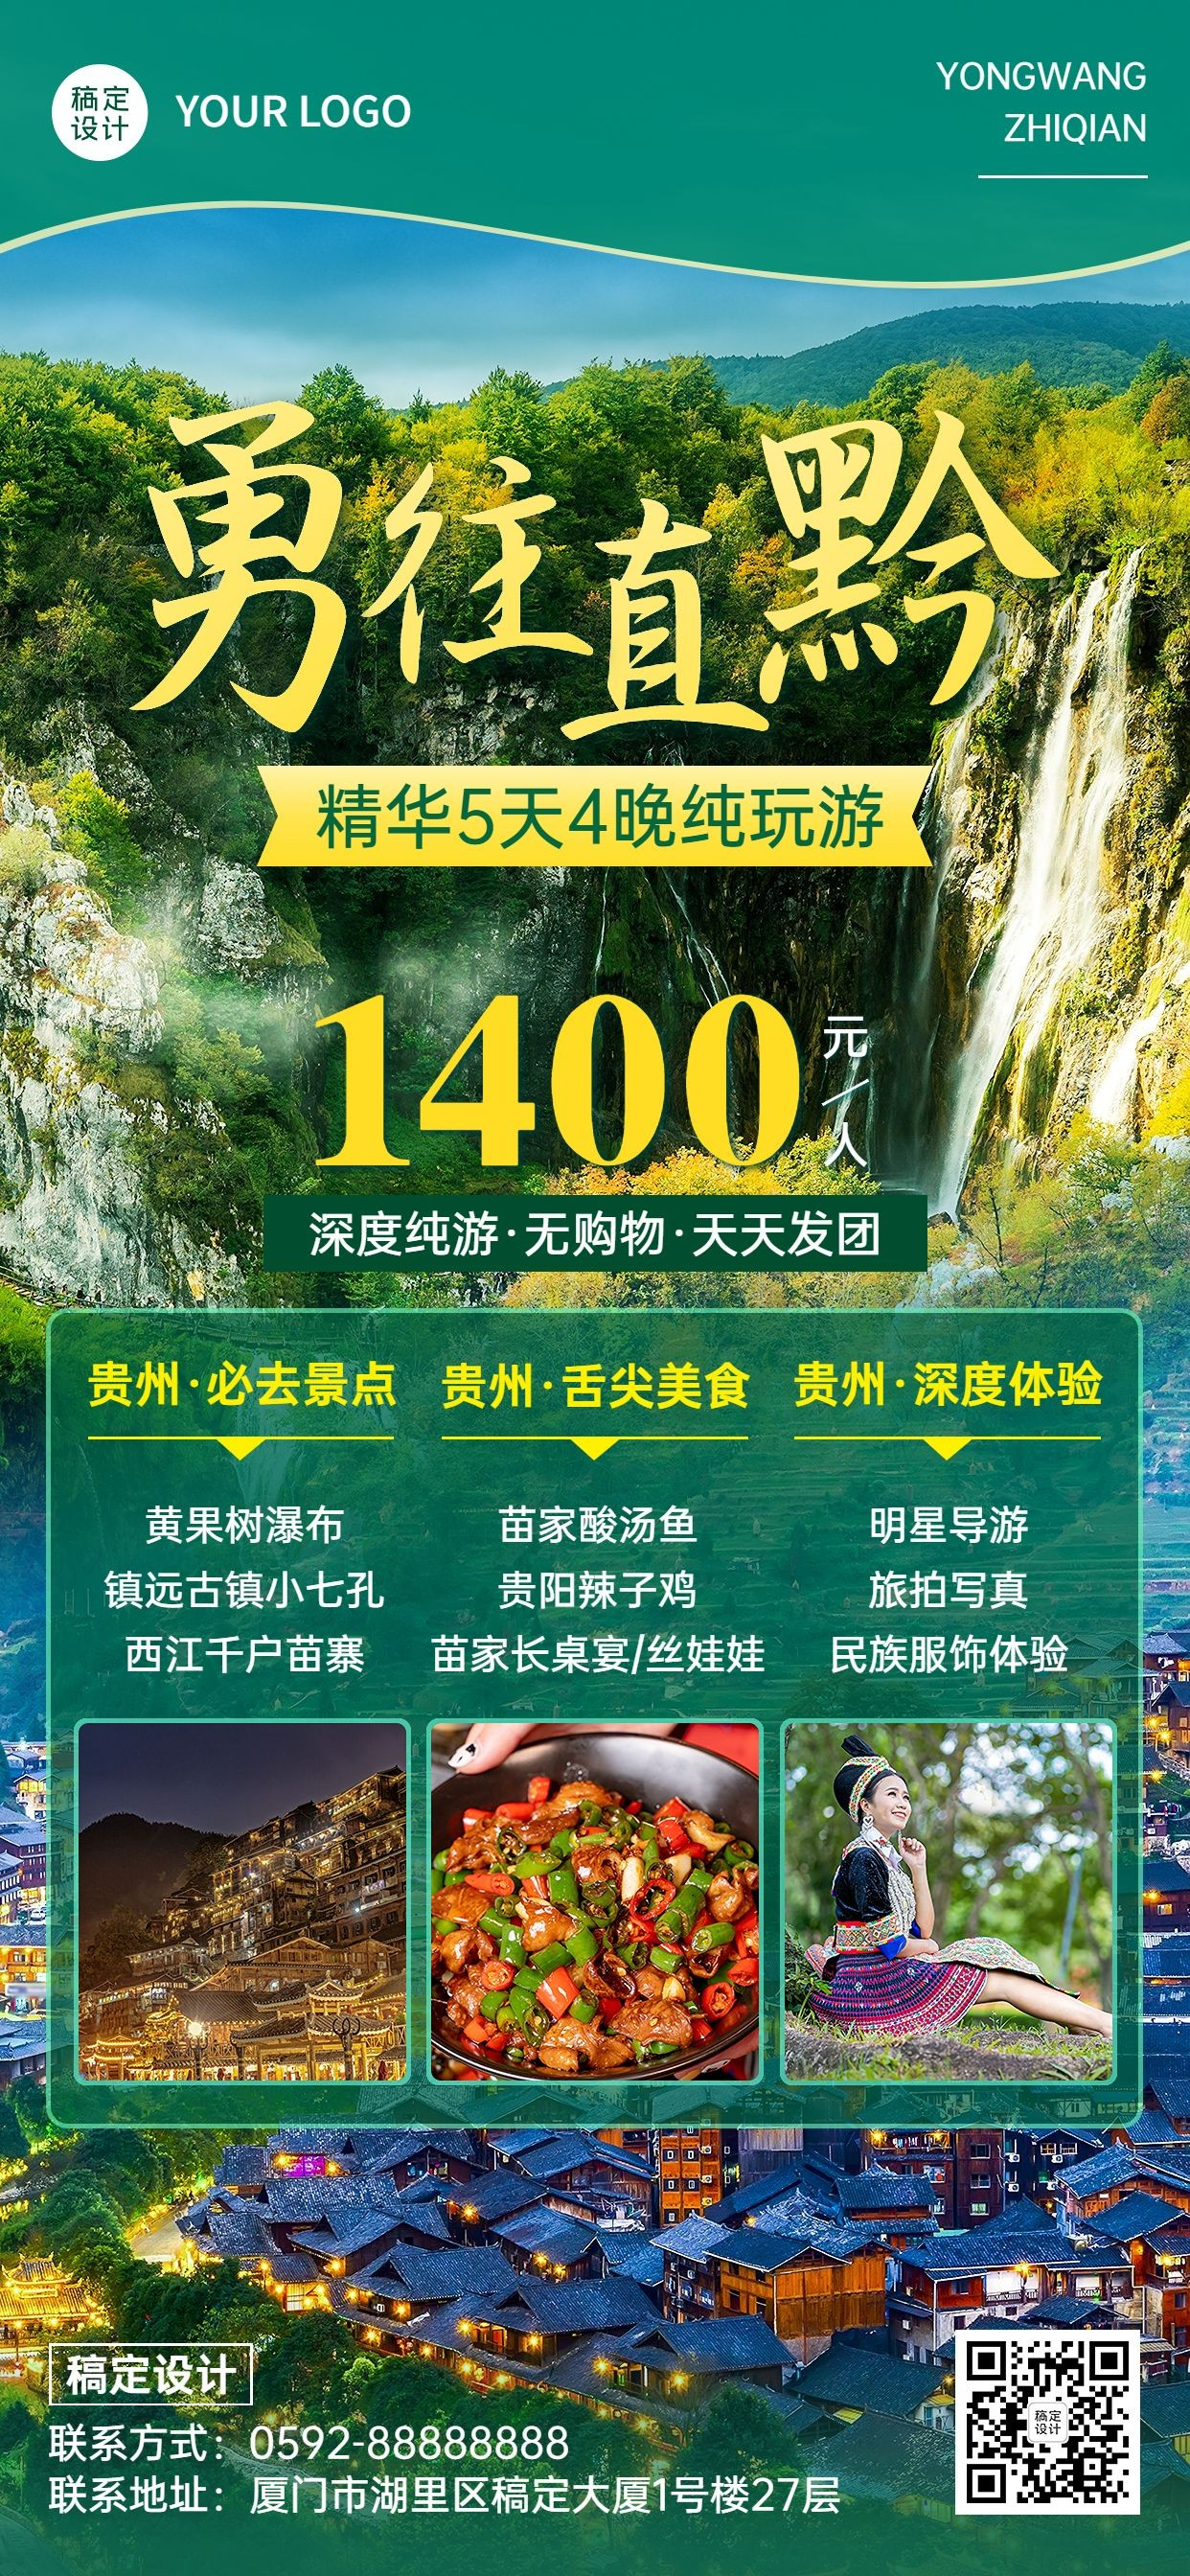 旅游出行贵州景区景点行程宣传推广全屏竖版海报预览效果